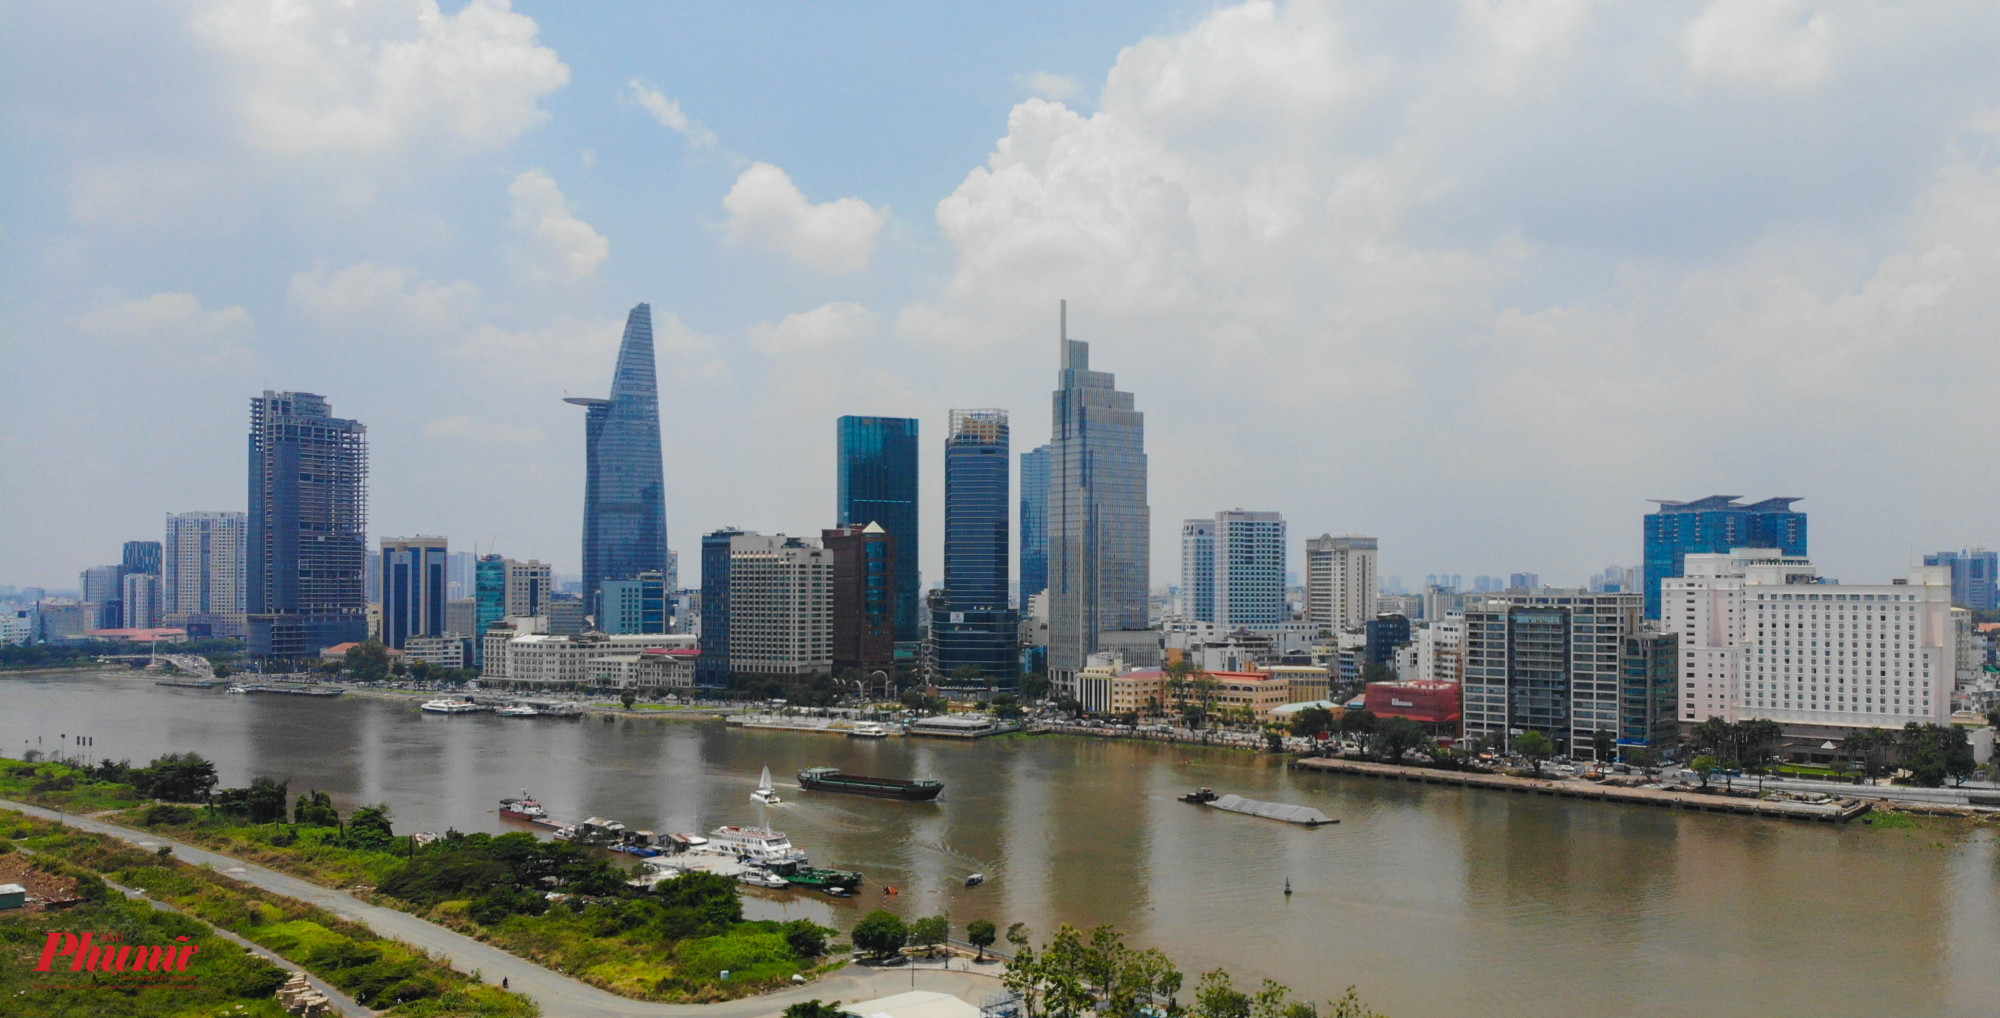 Hiện nay, người dân qua lại giữa Thủ Thiêm và trung tâm TPHCM bằng cầu Thủ Thiêm 1 và hầm Thủ Thiêm, dự kiến trong tương lai sẽ có thêm cầu Thủ Thiêm 3, 4 và cầu đi bộ vượt sông Sài Gòn.